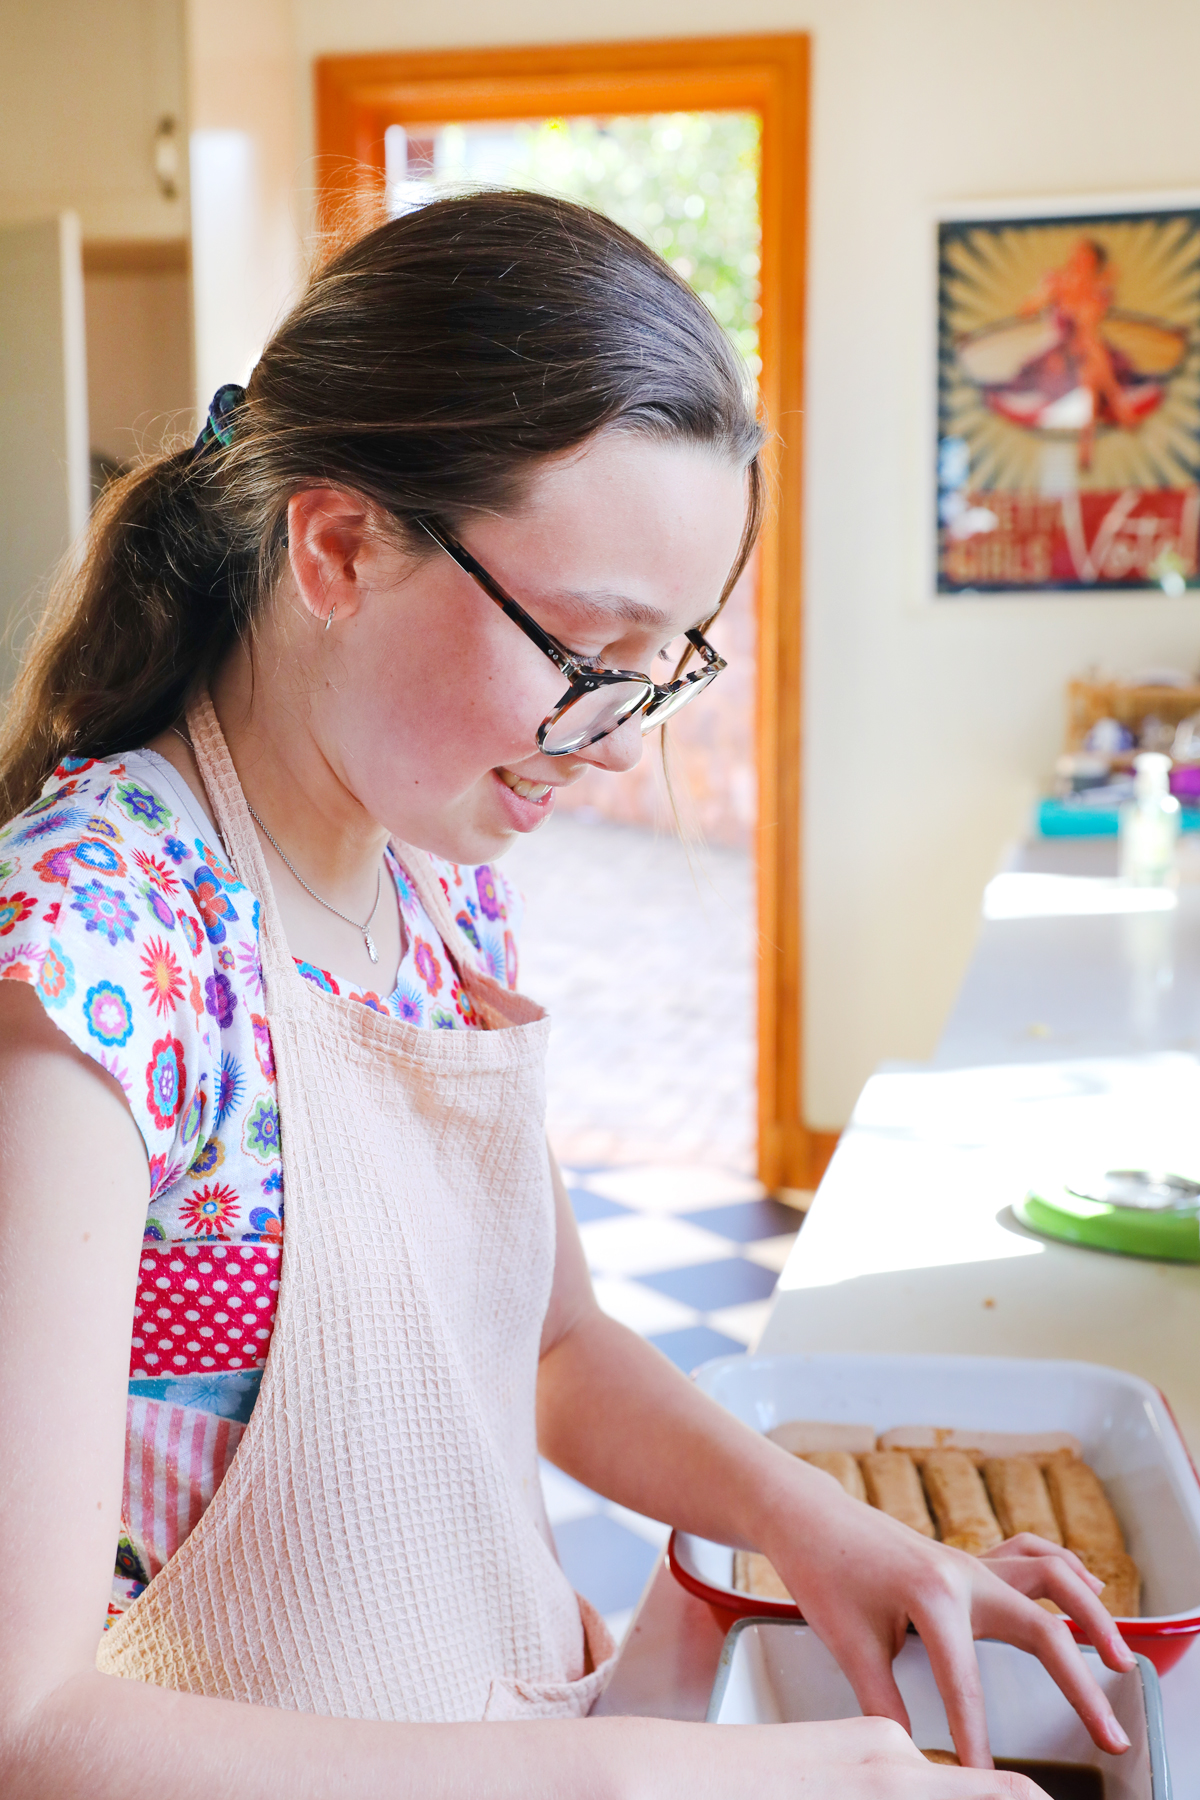 Chloe the baker